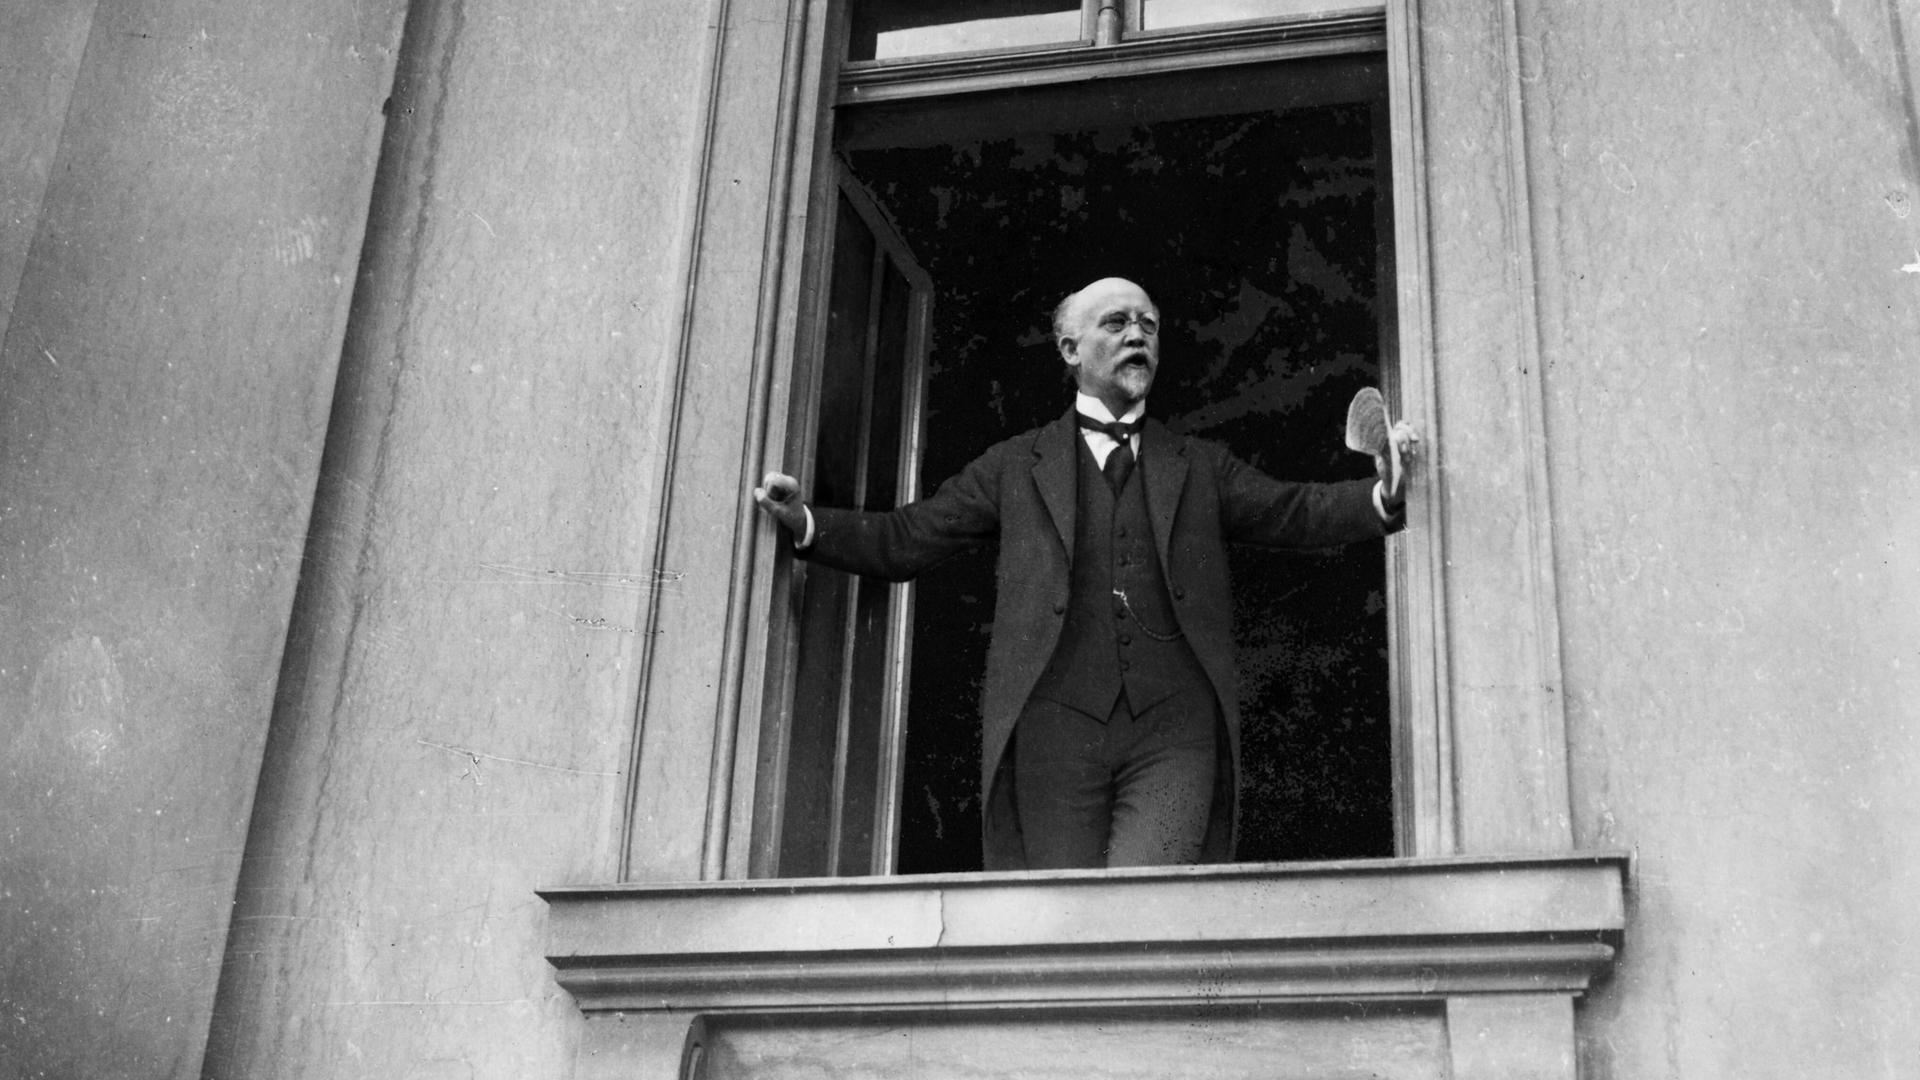 Philipp Scheidemann hält am 9. November 1918 eine Rede in einem Fenster der Reichskanzlei stehend (Foto nachgestellt)